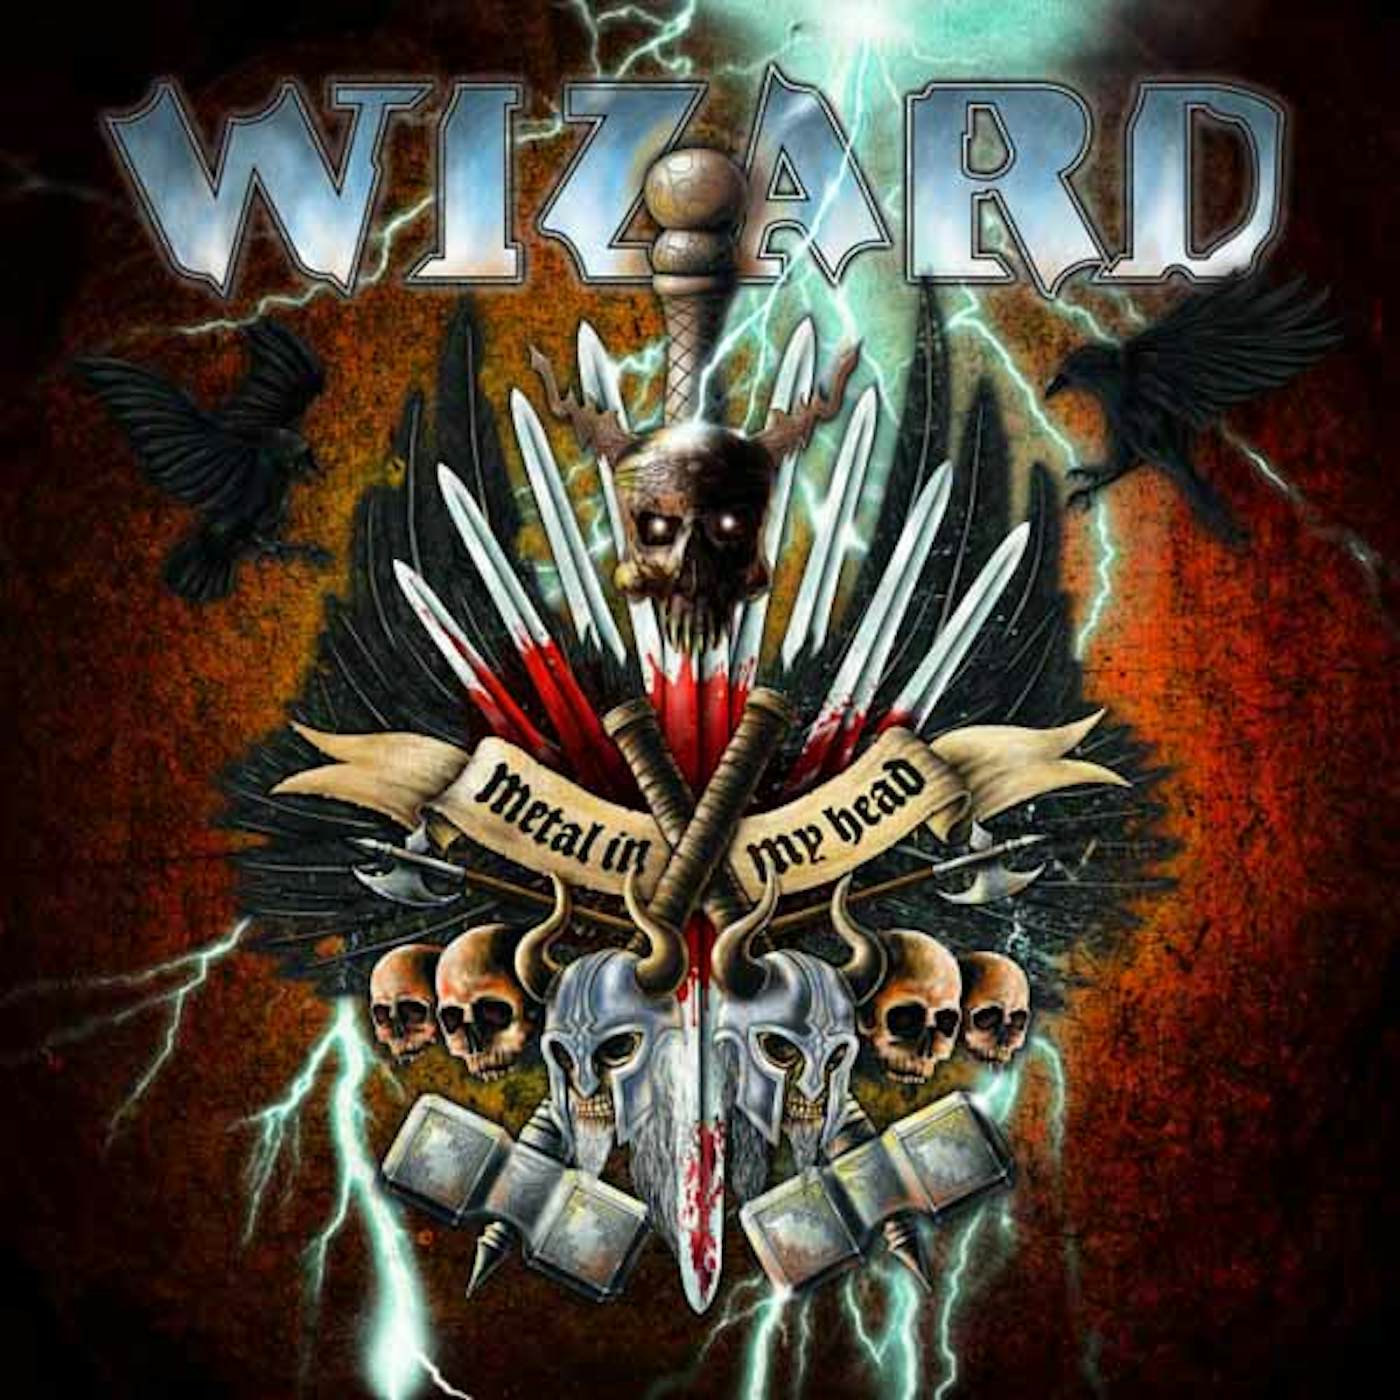 Wizard LP - Metal In My Head (Vinyl)